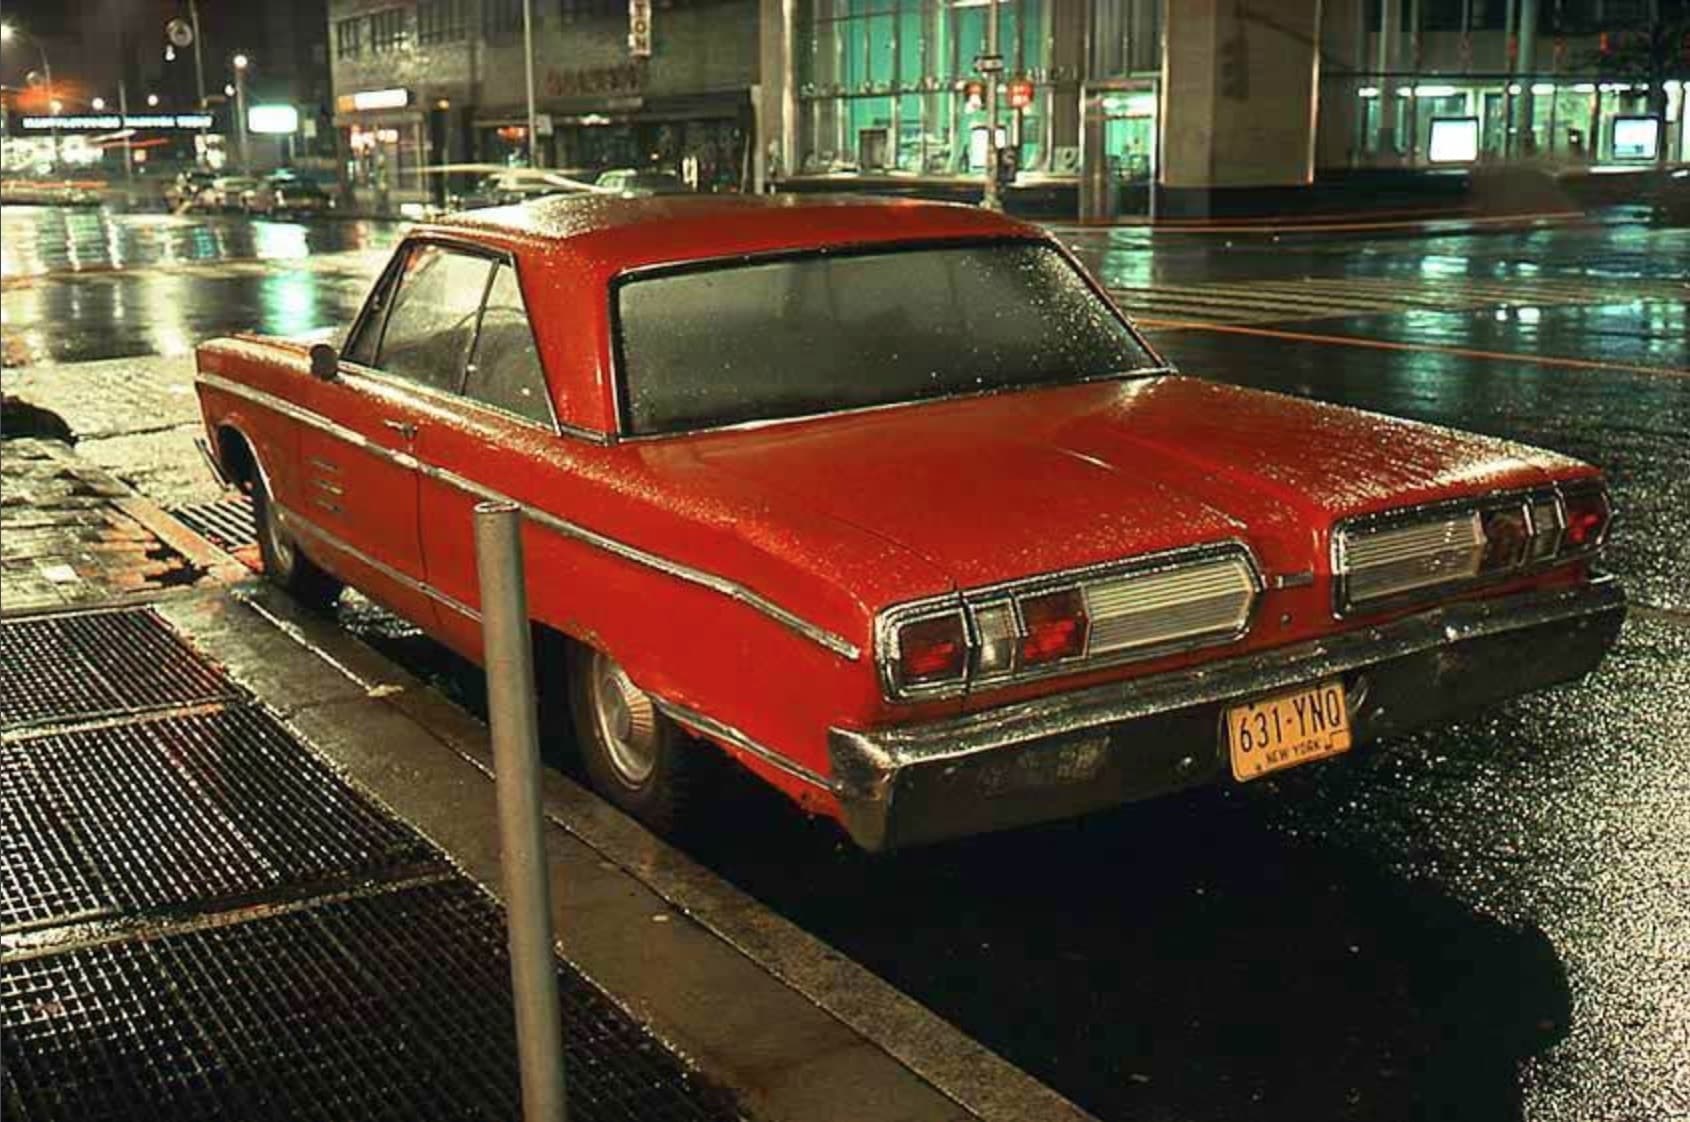 Langdon Clay Cars - Klassische Autos in New York City